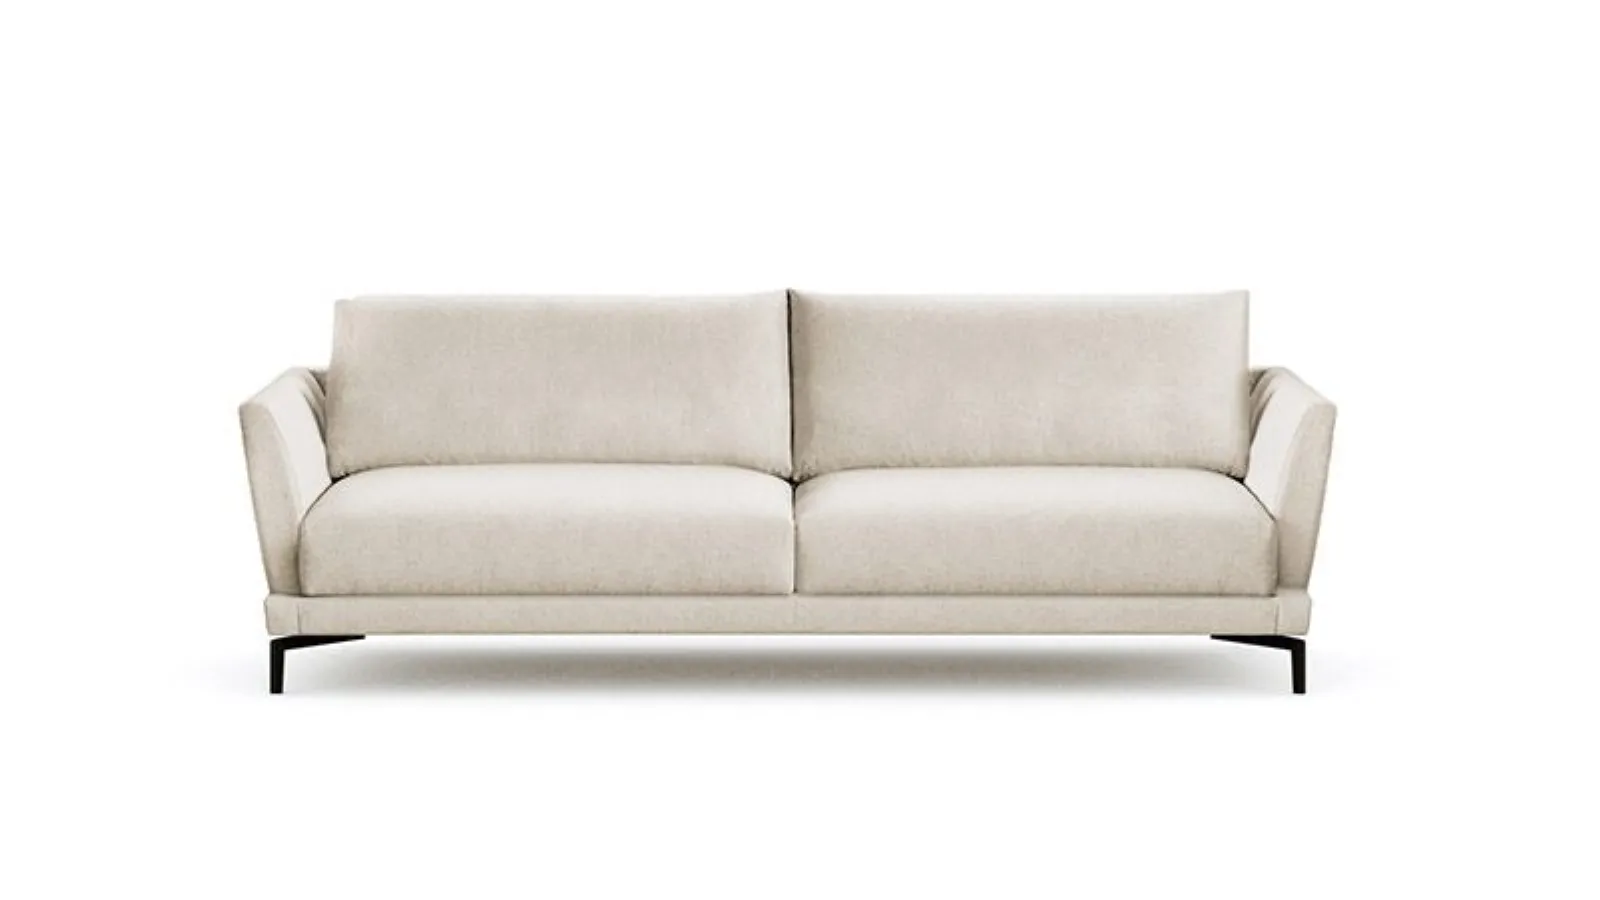 Elton white fabric sofa